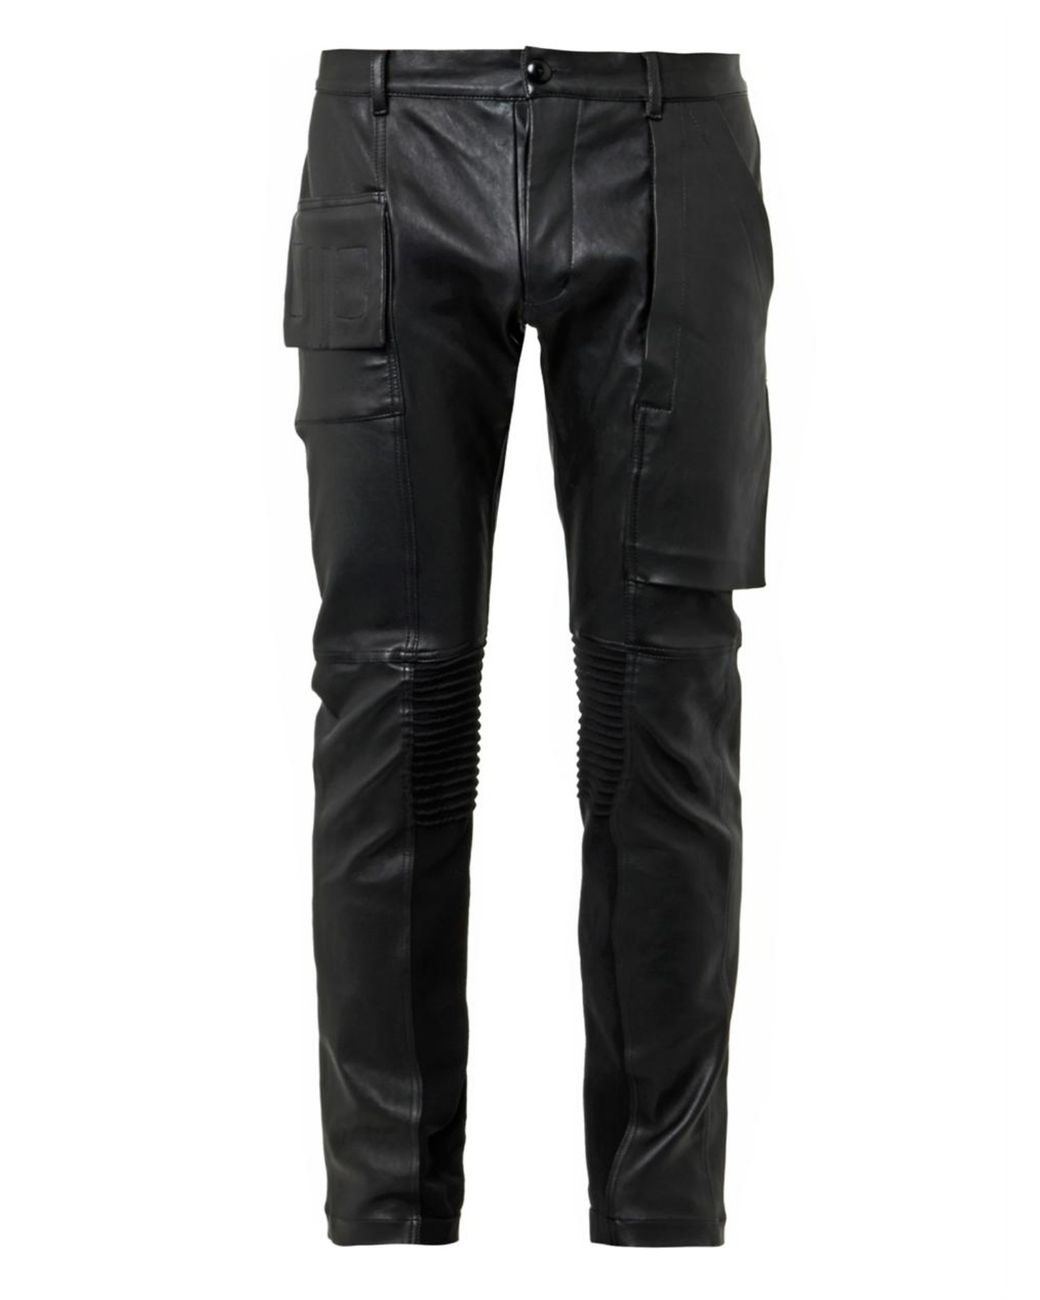 ウエスト33Rick Owens leather pants skinny Memphis - ワークパンツ ...